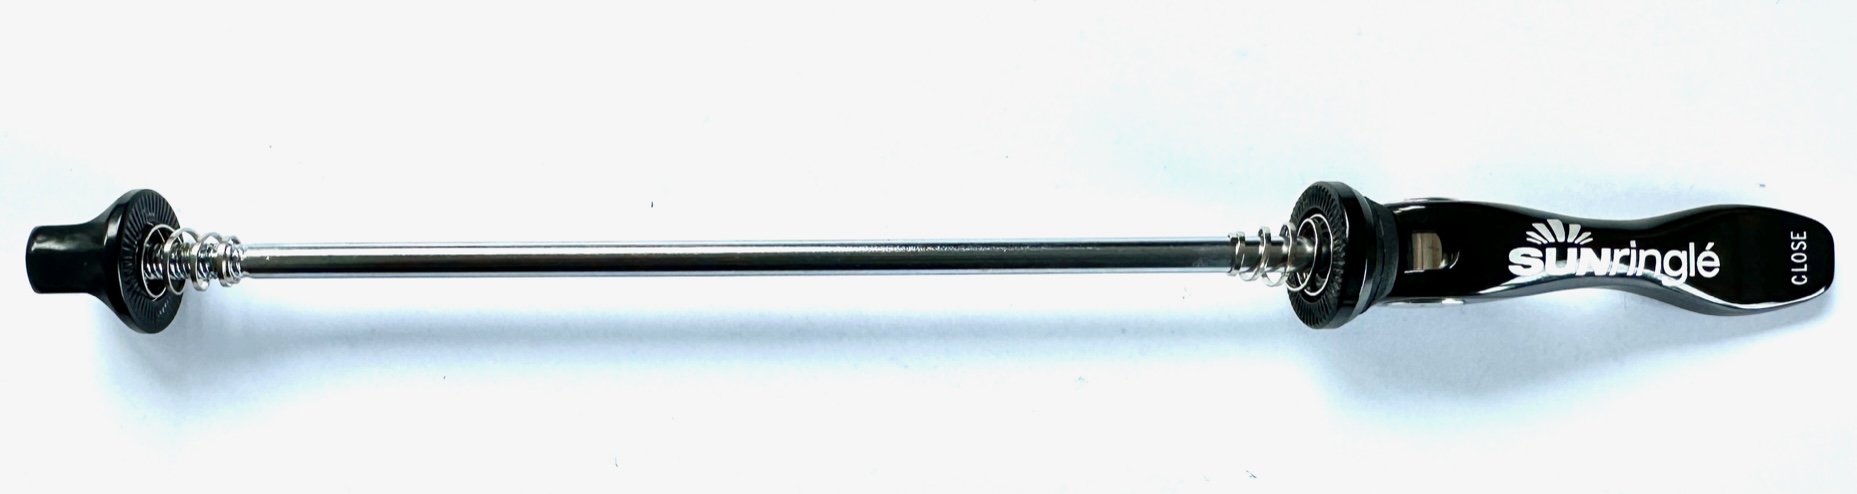 Schnellspanner SUNringlé für das Hinterrad 168 mm, schwarz